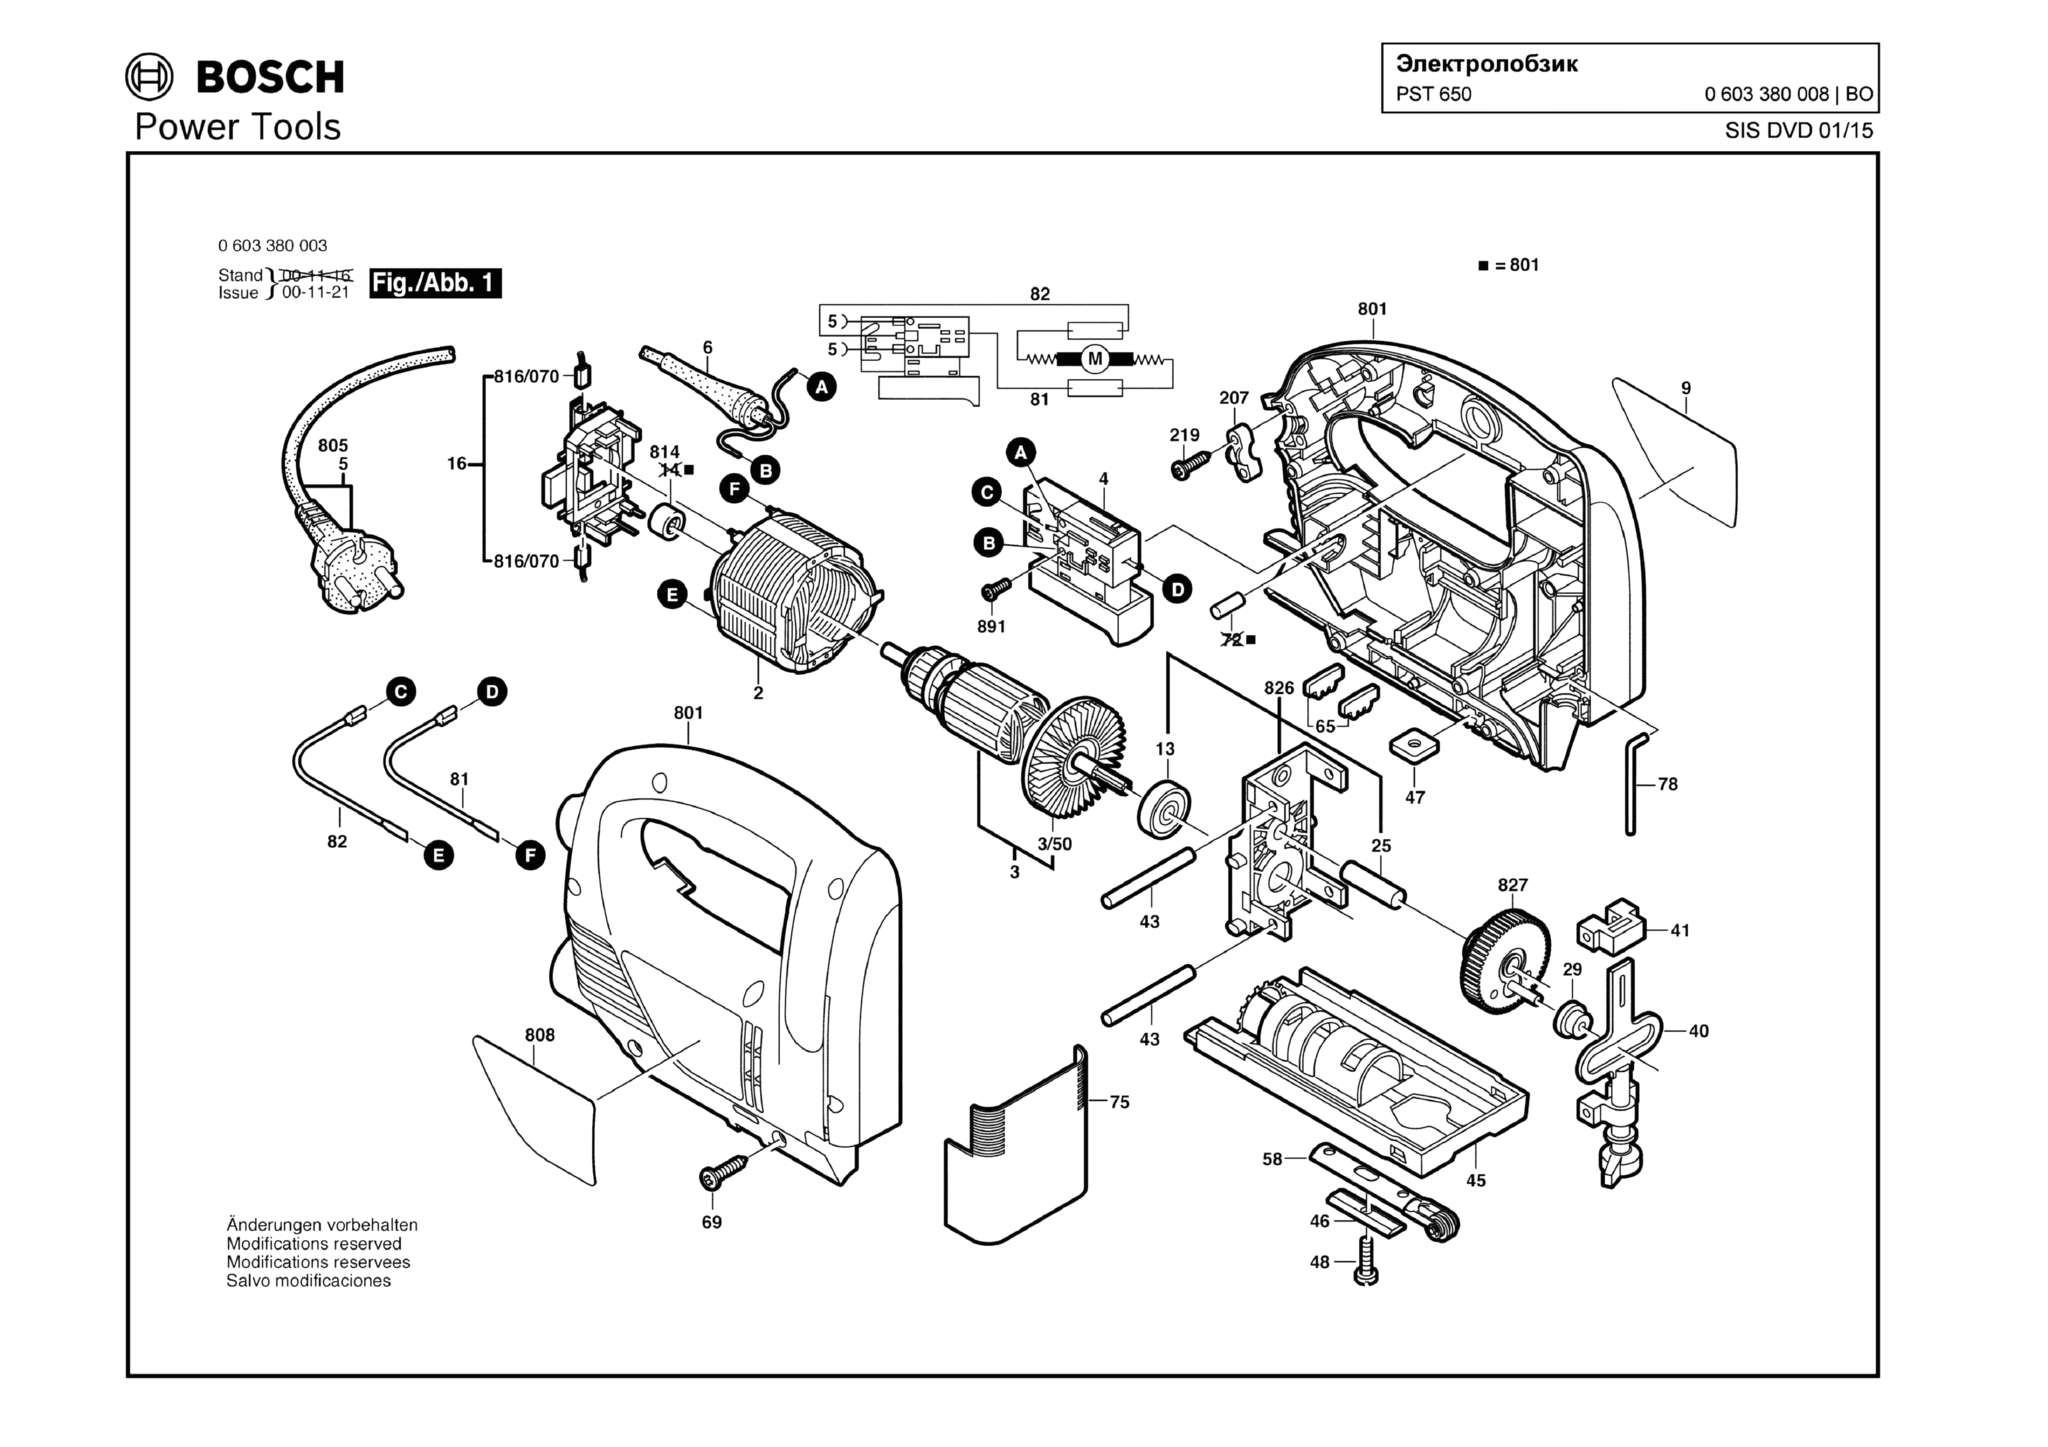 Запчасти, схема и деталировка Bosch PST 650 (ТИП 0603380008)